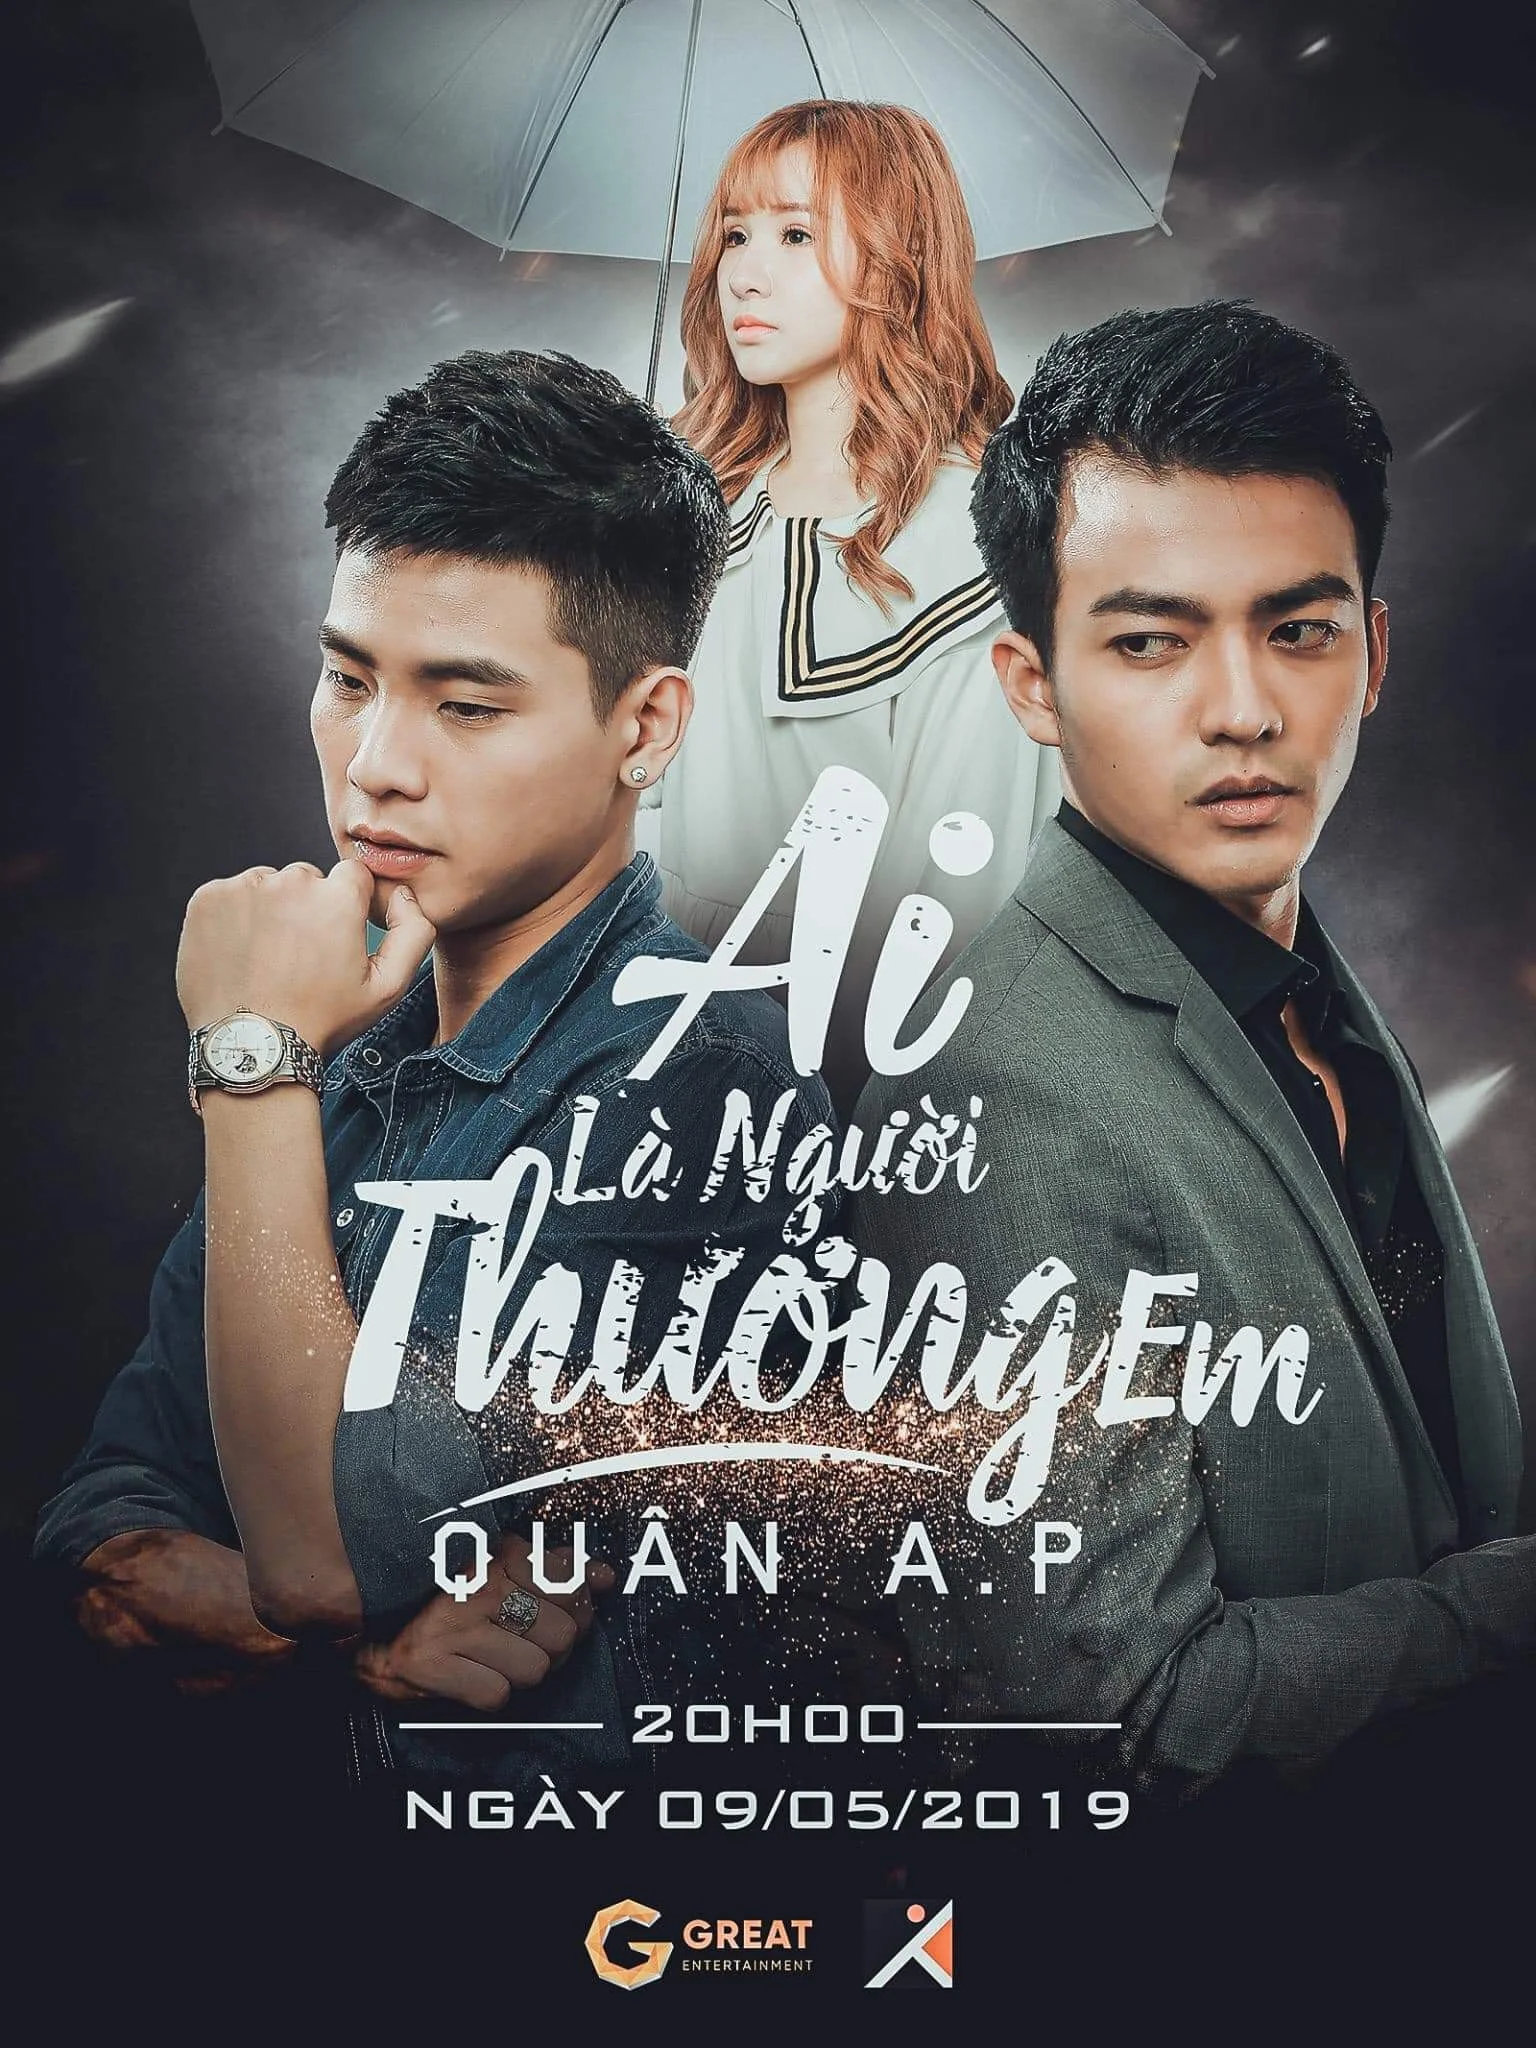 Phạm Anh Quân's cover photo